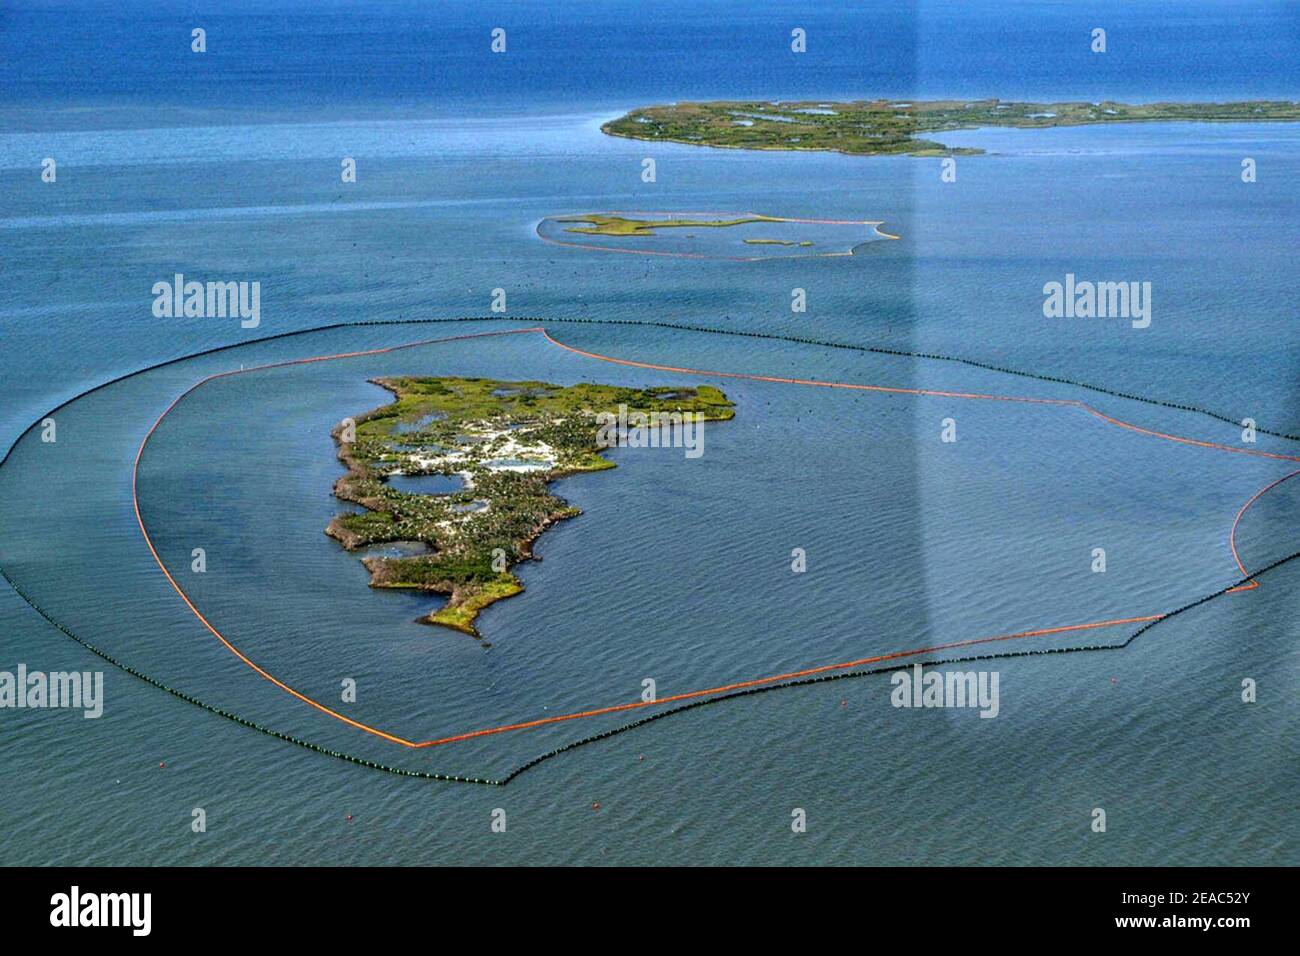 New Harbour Island, La während der Ölpest von Deepwater Horizon. Stockfoto